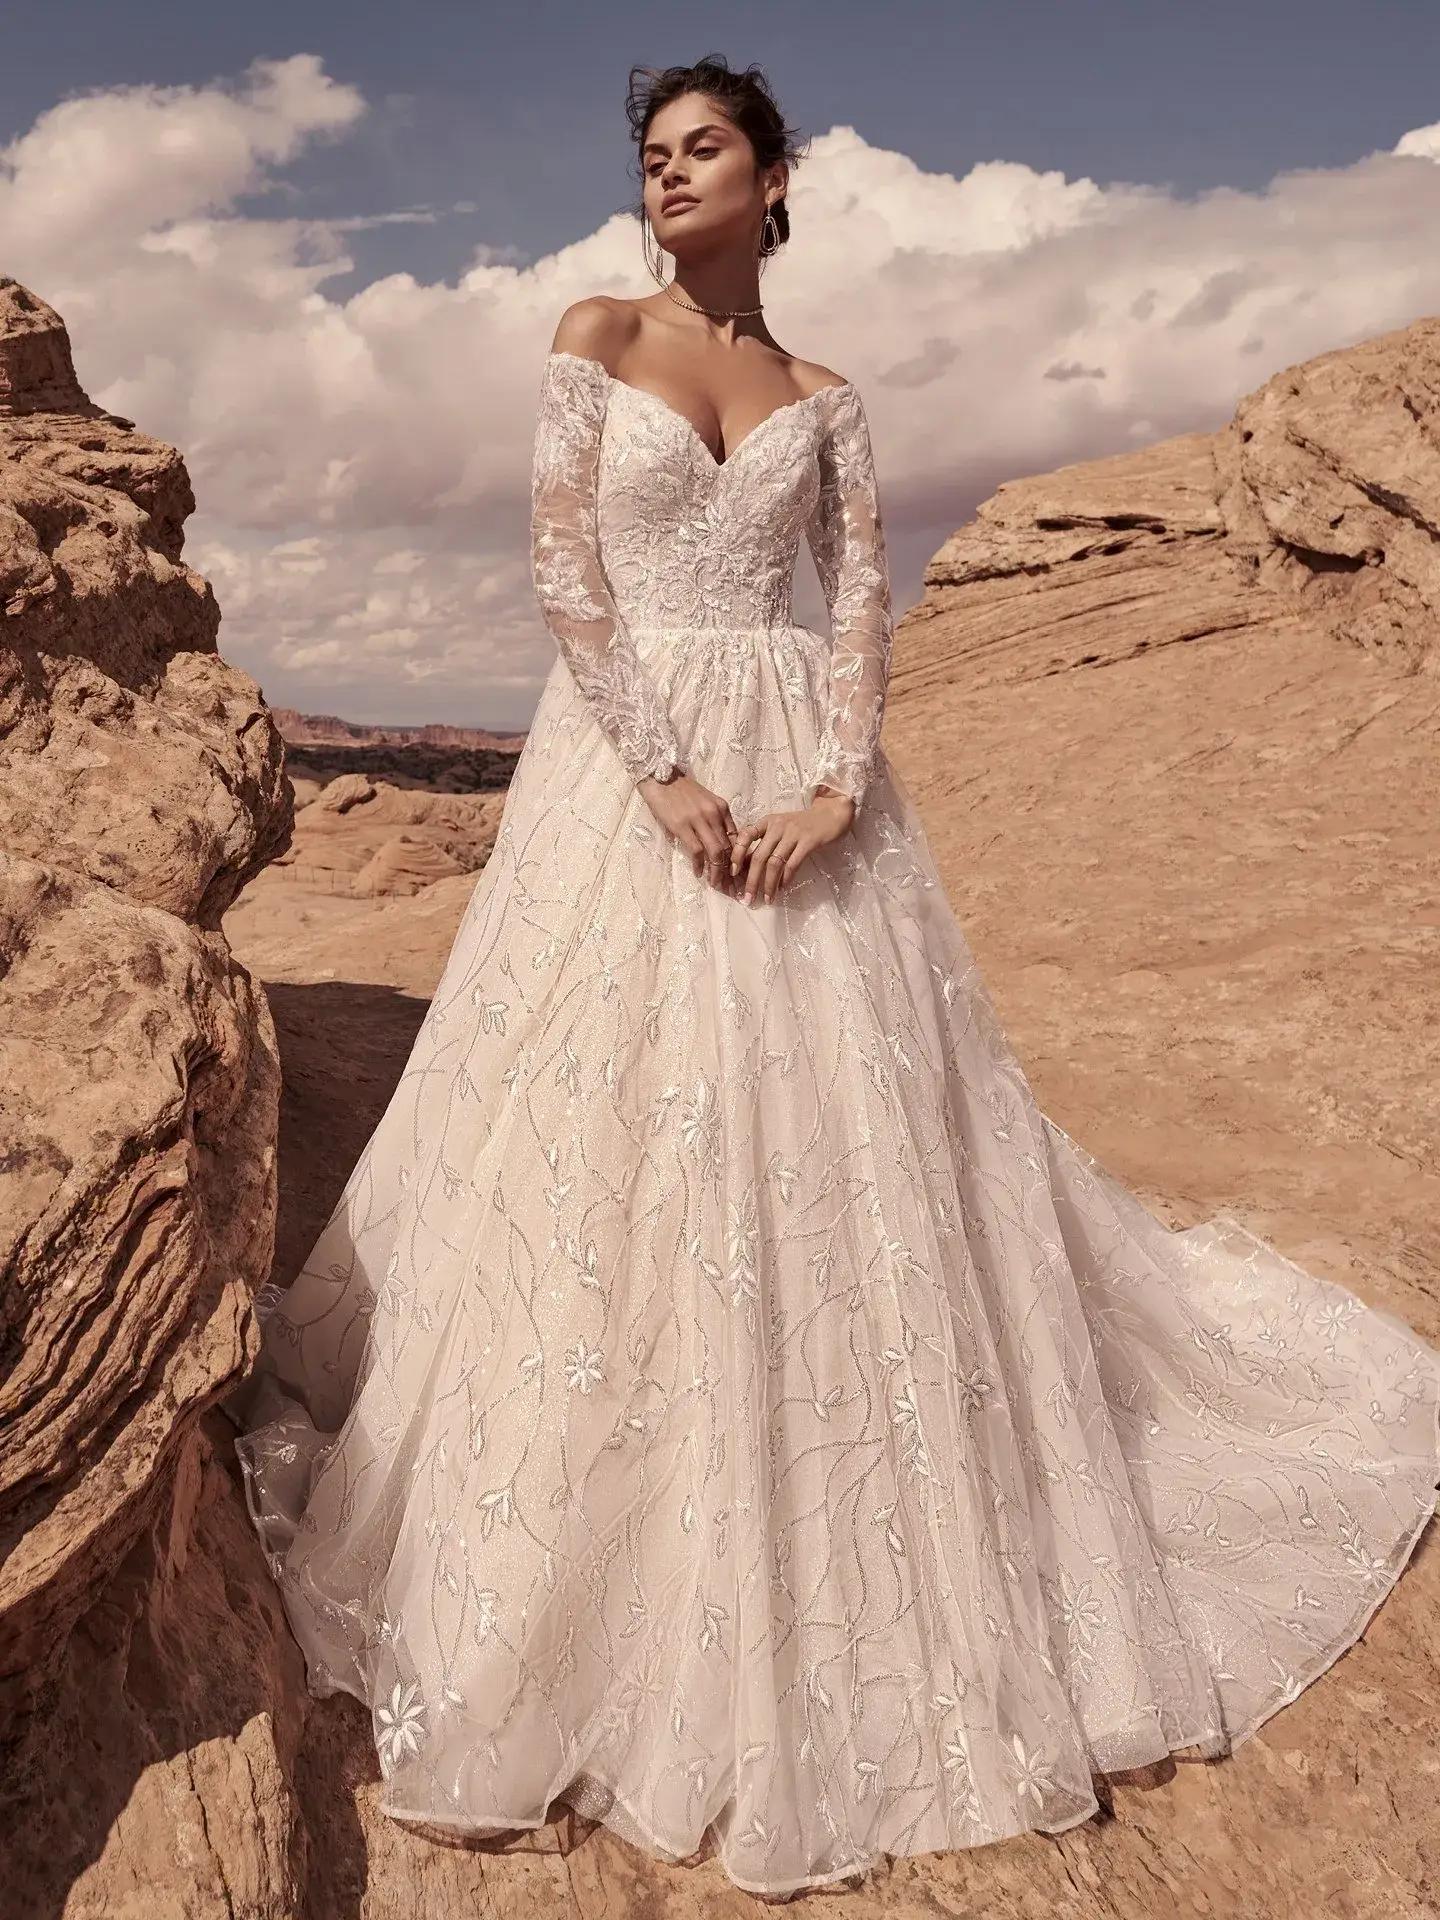 Crystal and Sequin Embellishments: Sparkling Details for Winter Wedding Dresses. Desktop Image